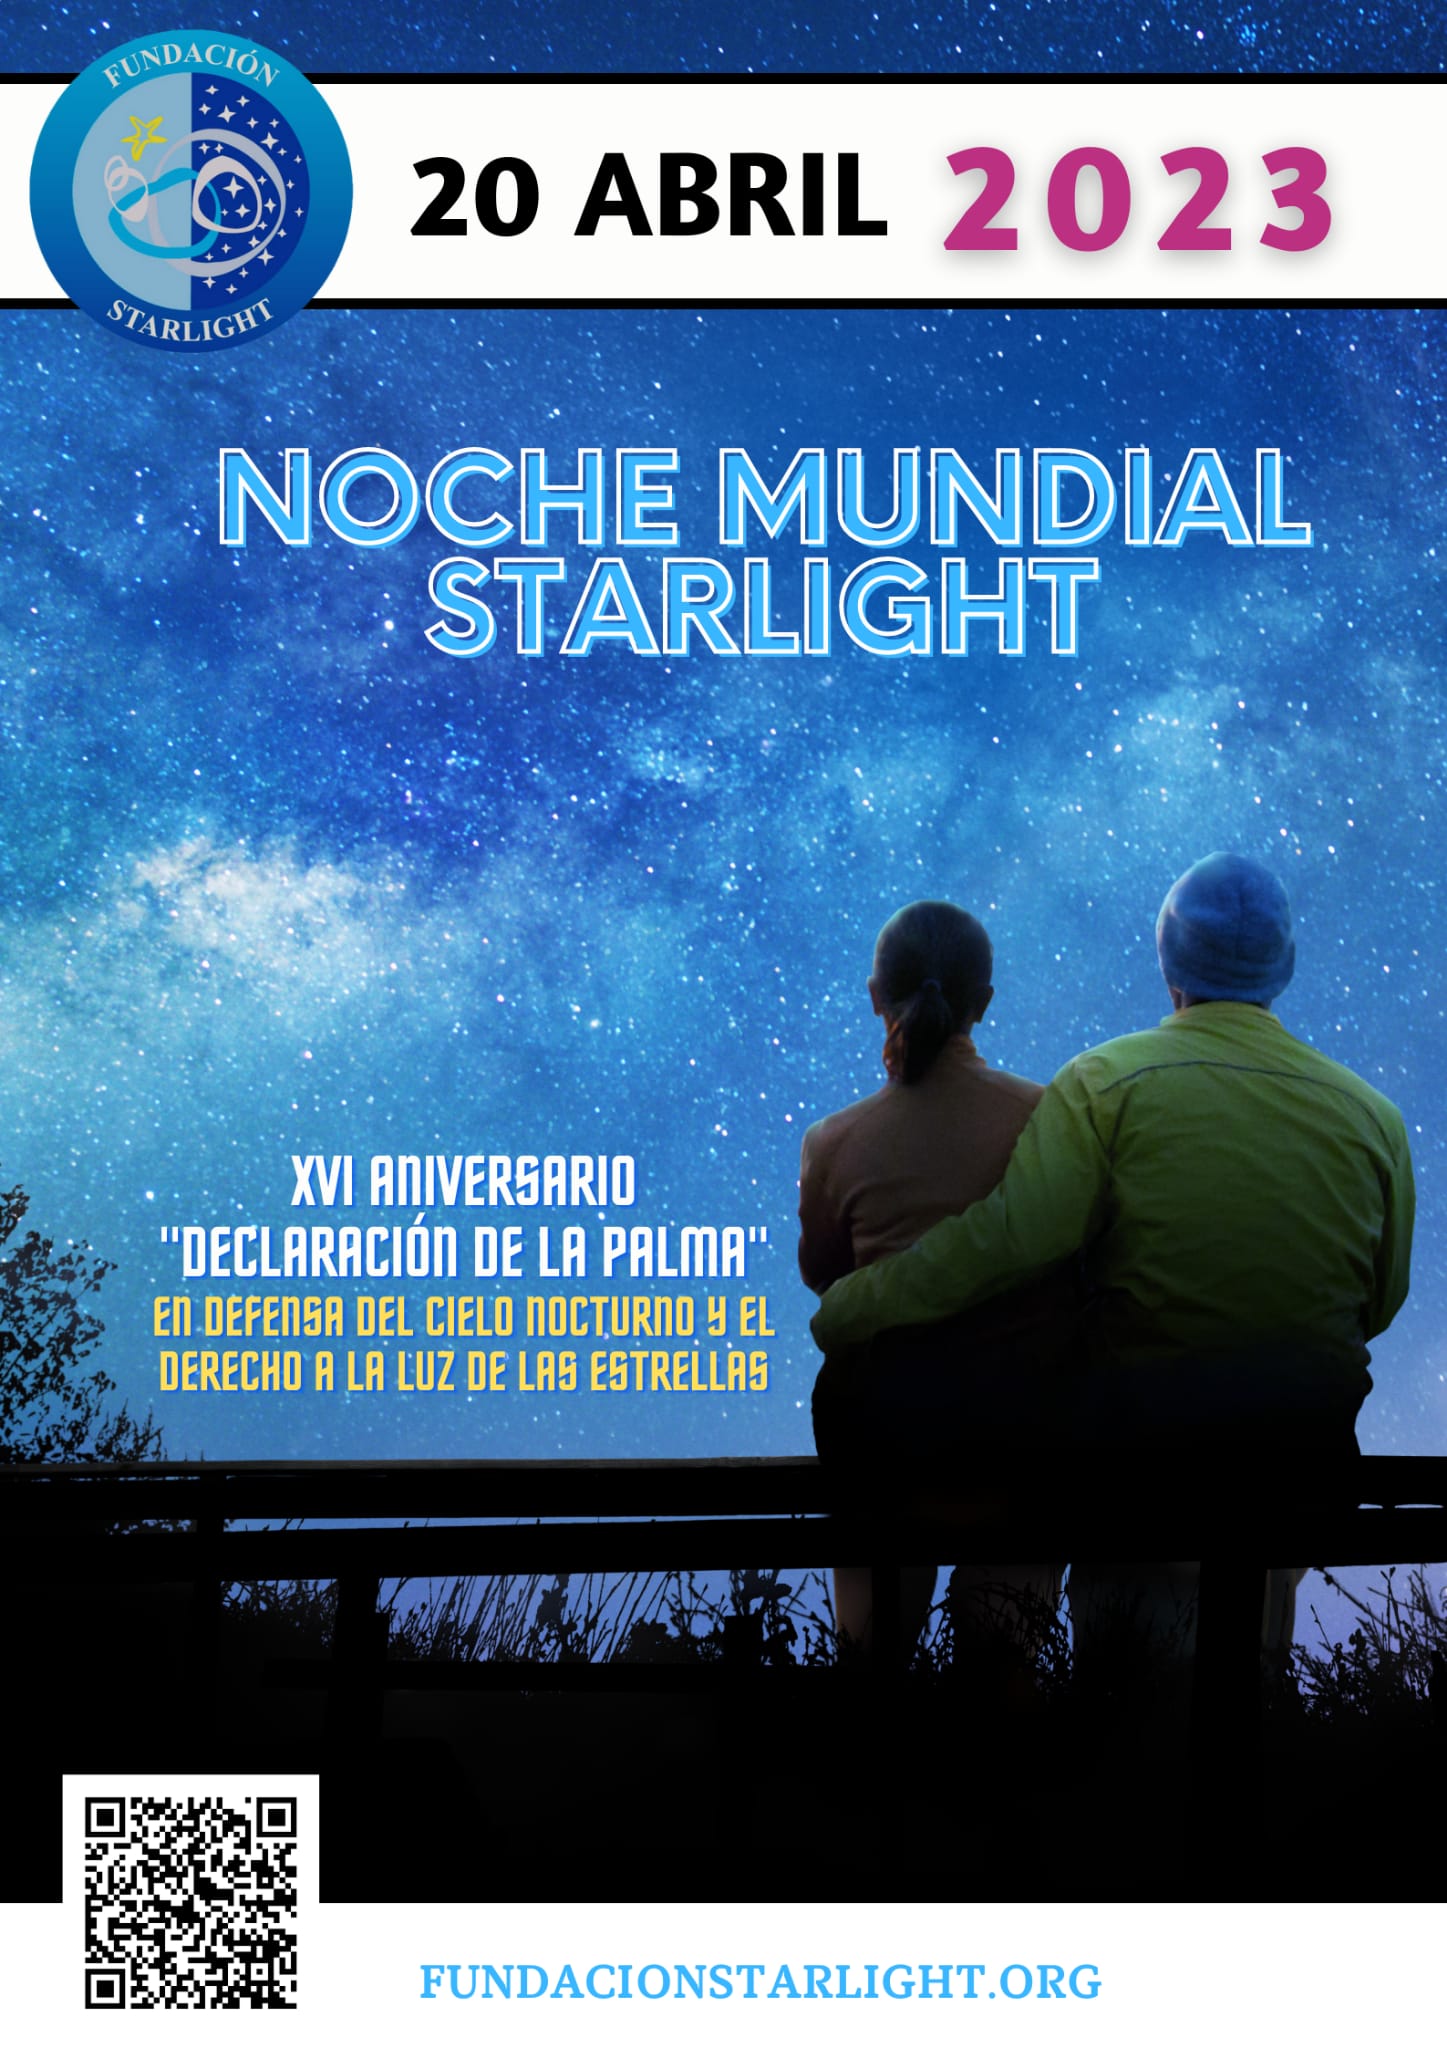 noche mundial starlight 2023 barreal blanco